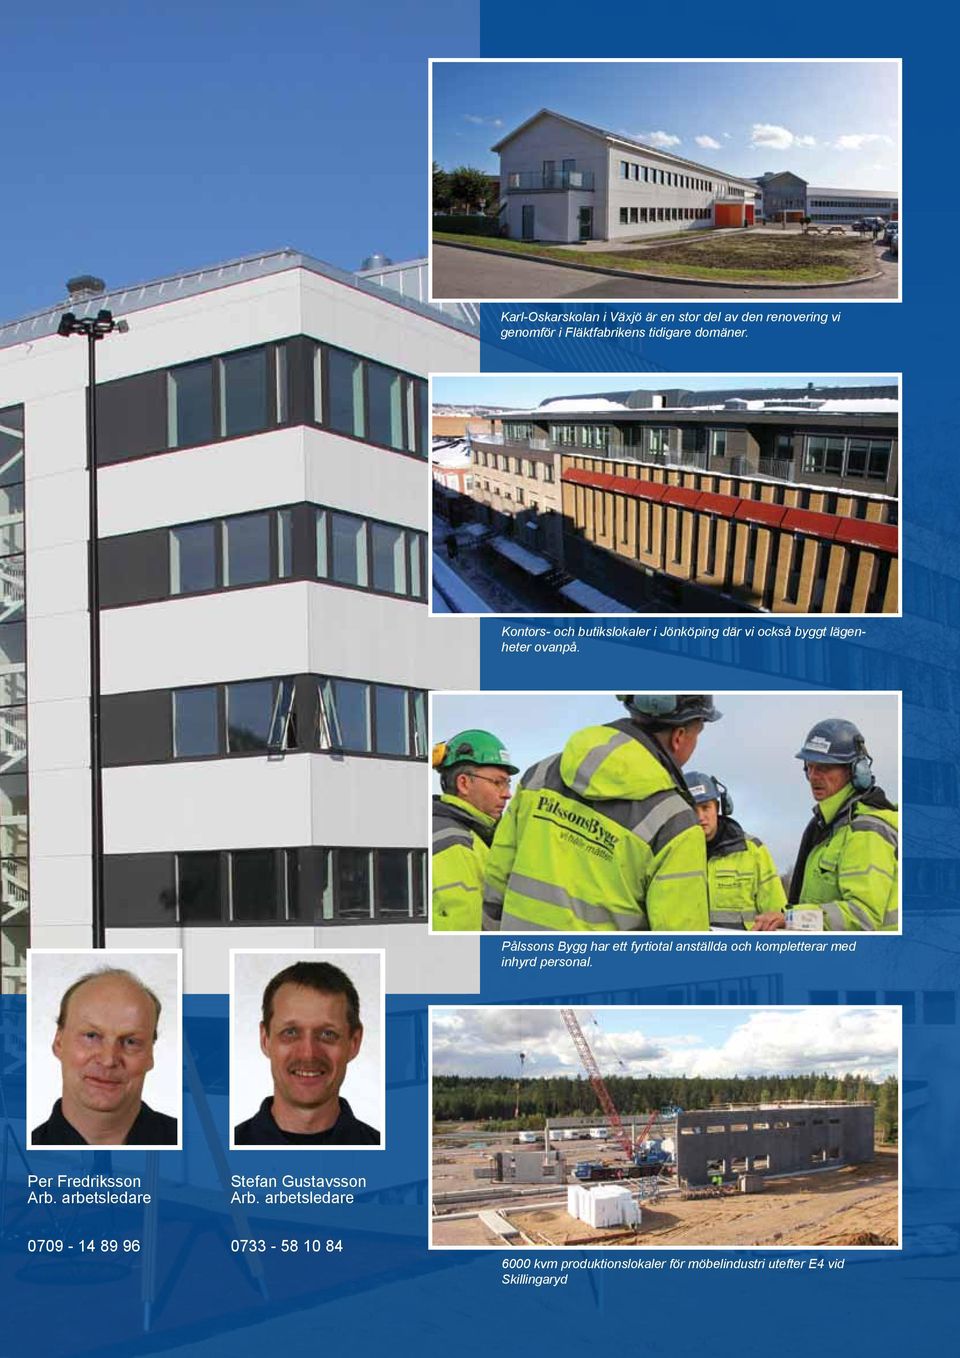 Pålssons Bygg har ett fyrtiotal anställda och kompletterar med inhyrd personal. Per Fredriksson Arb.